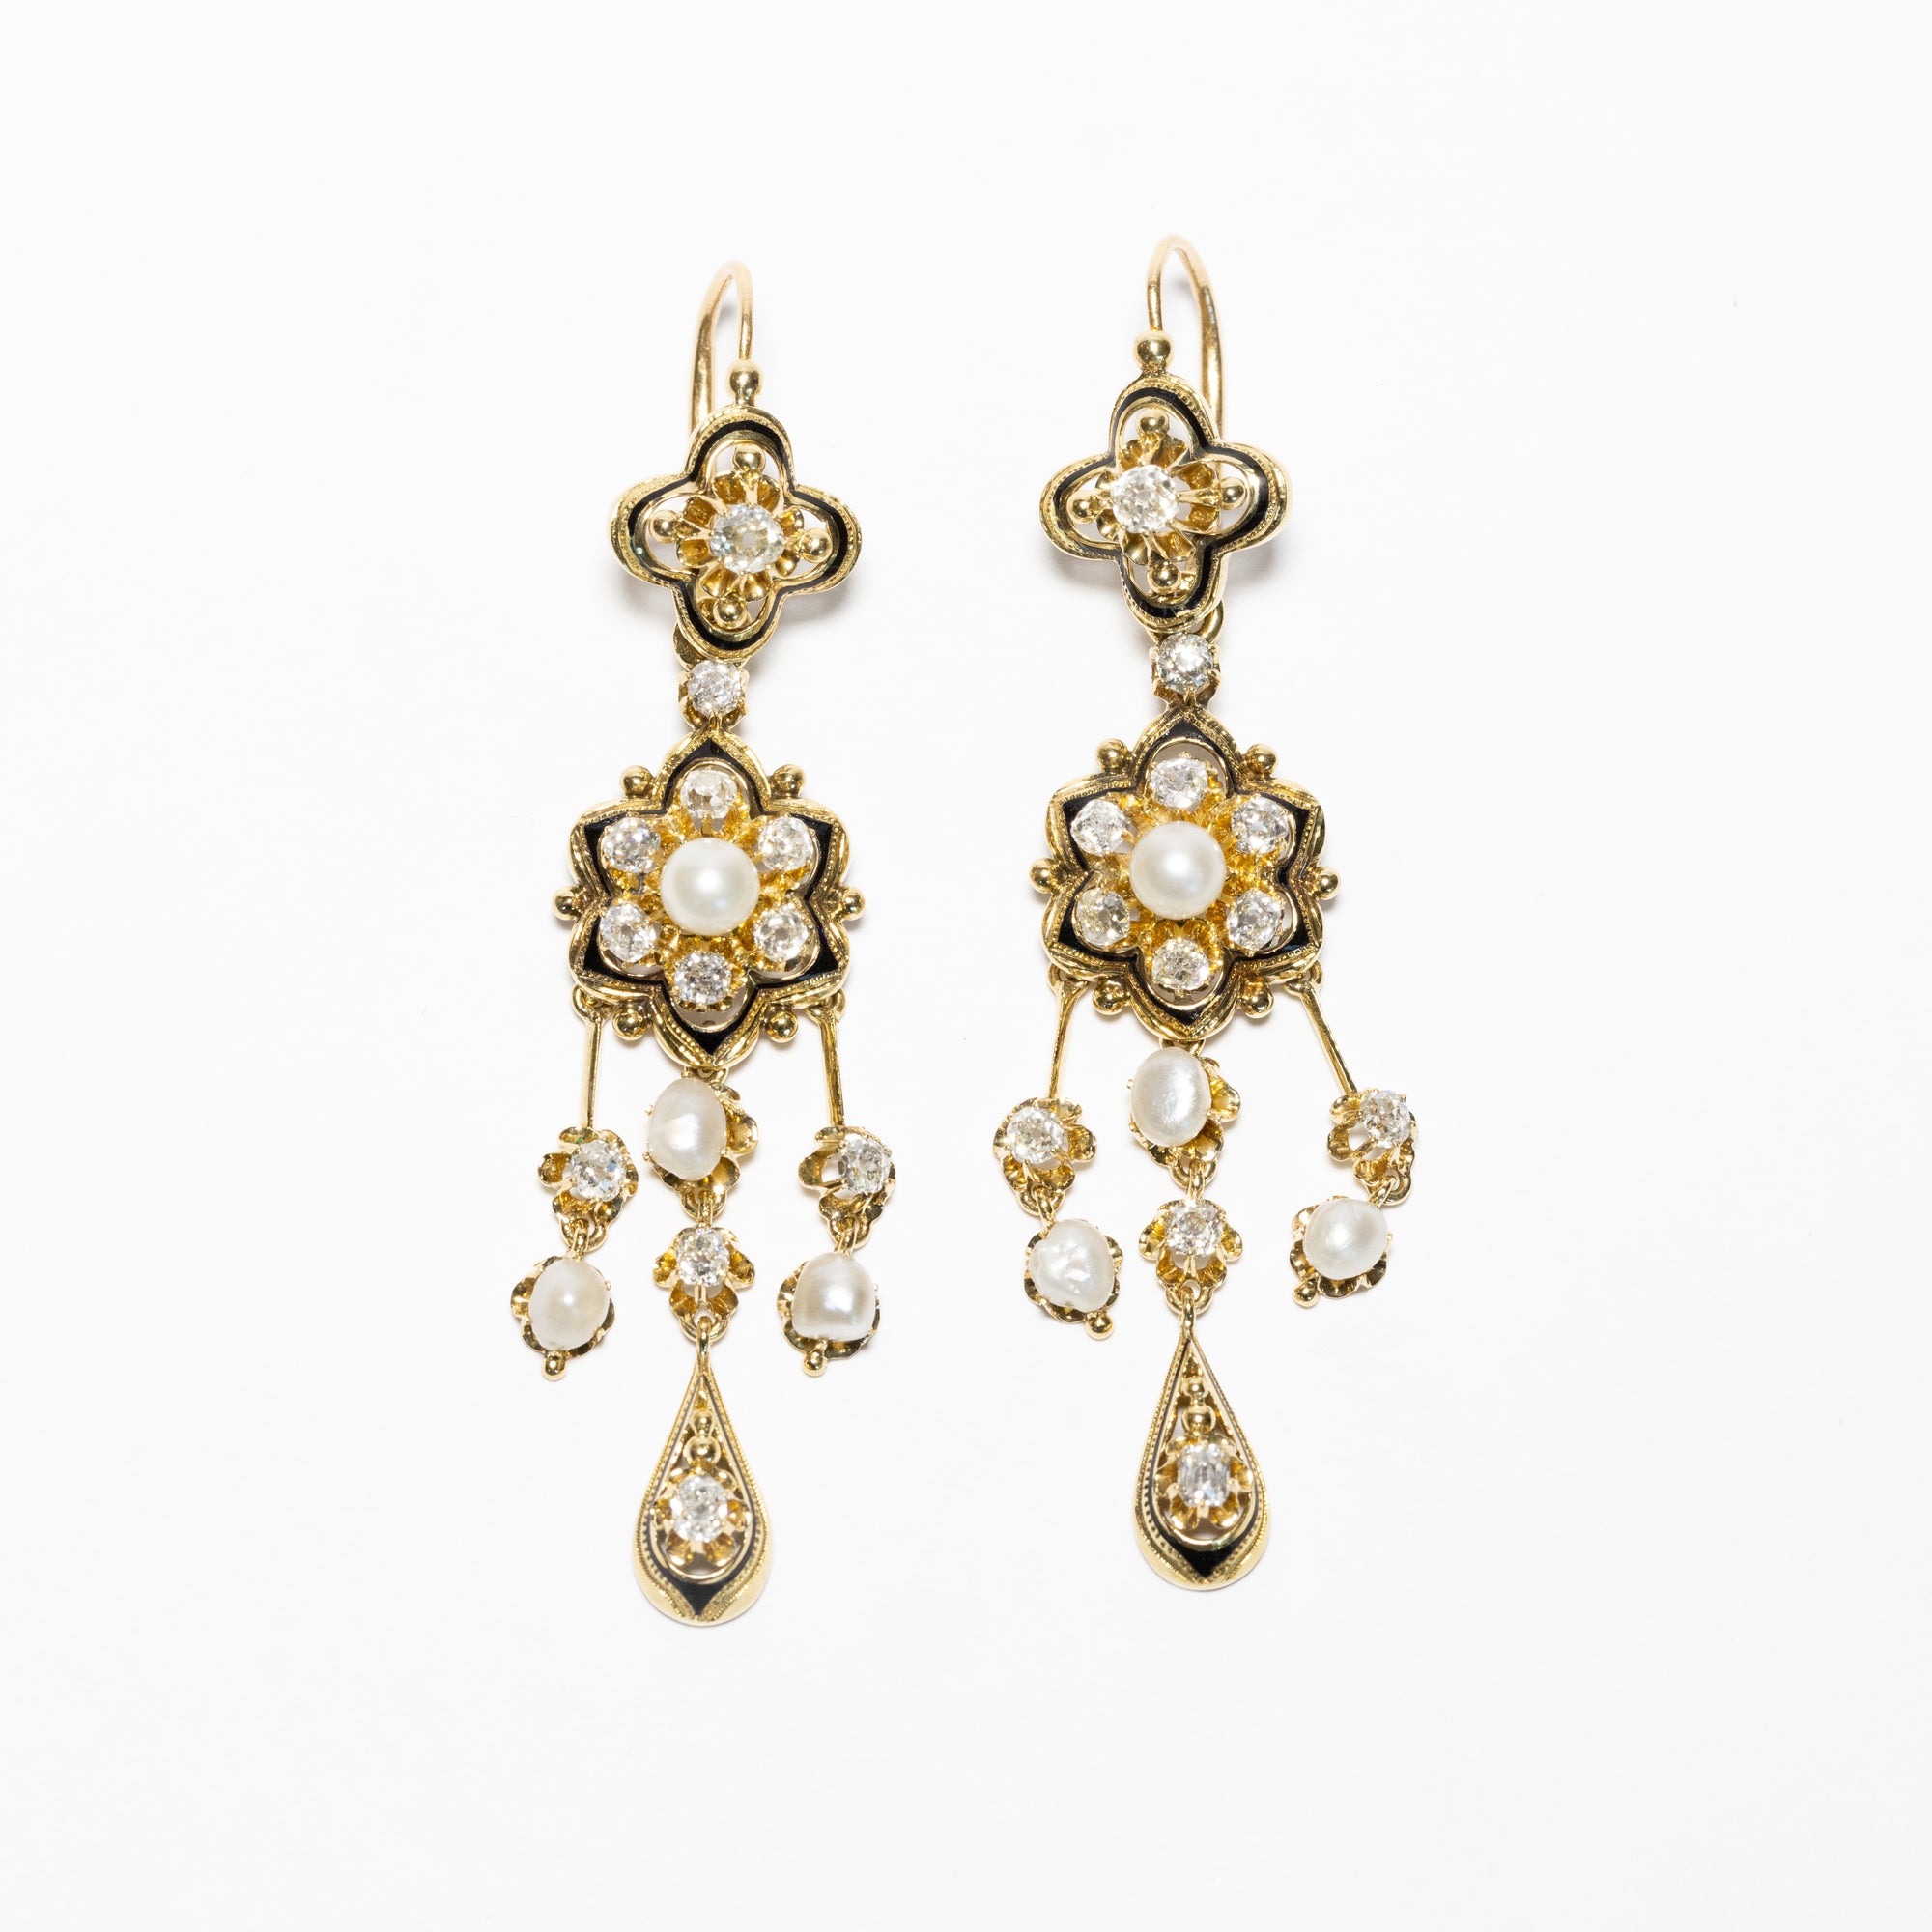 Orecchini "Regency" in oro giallo 18 kt con Perle e Diamanti